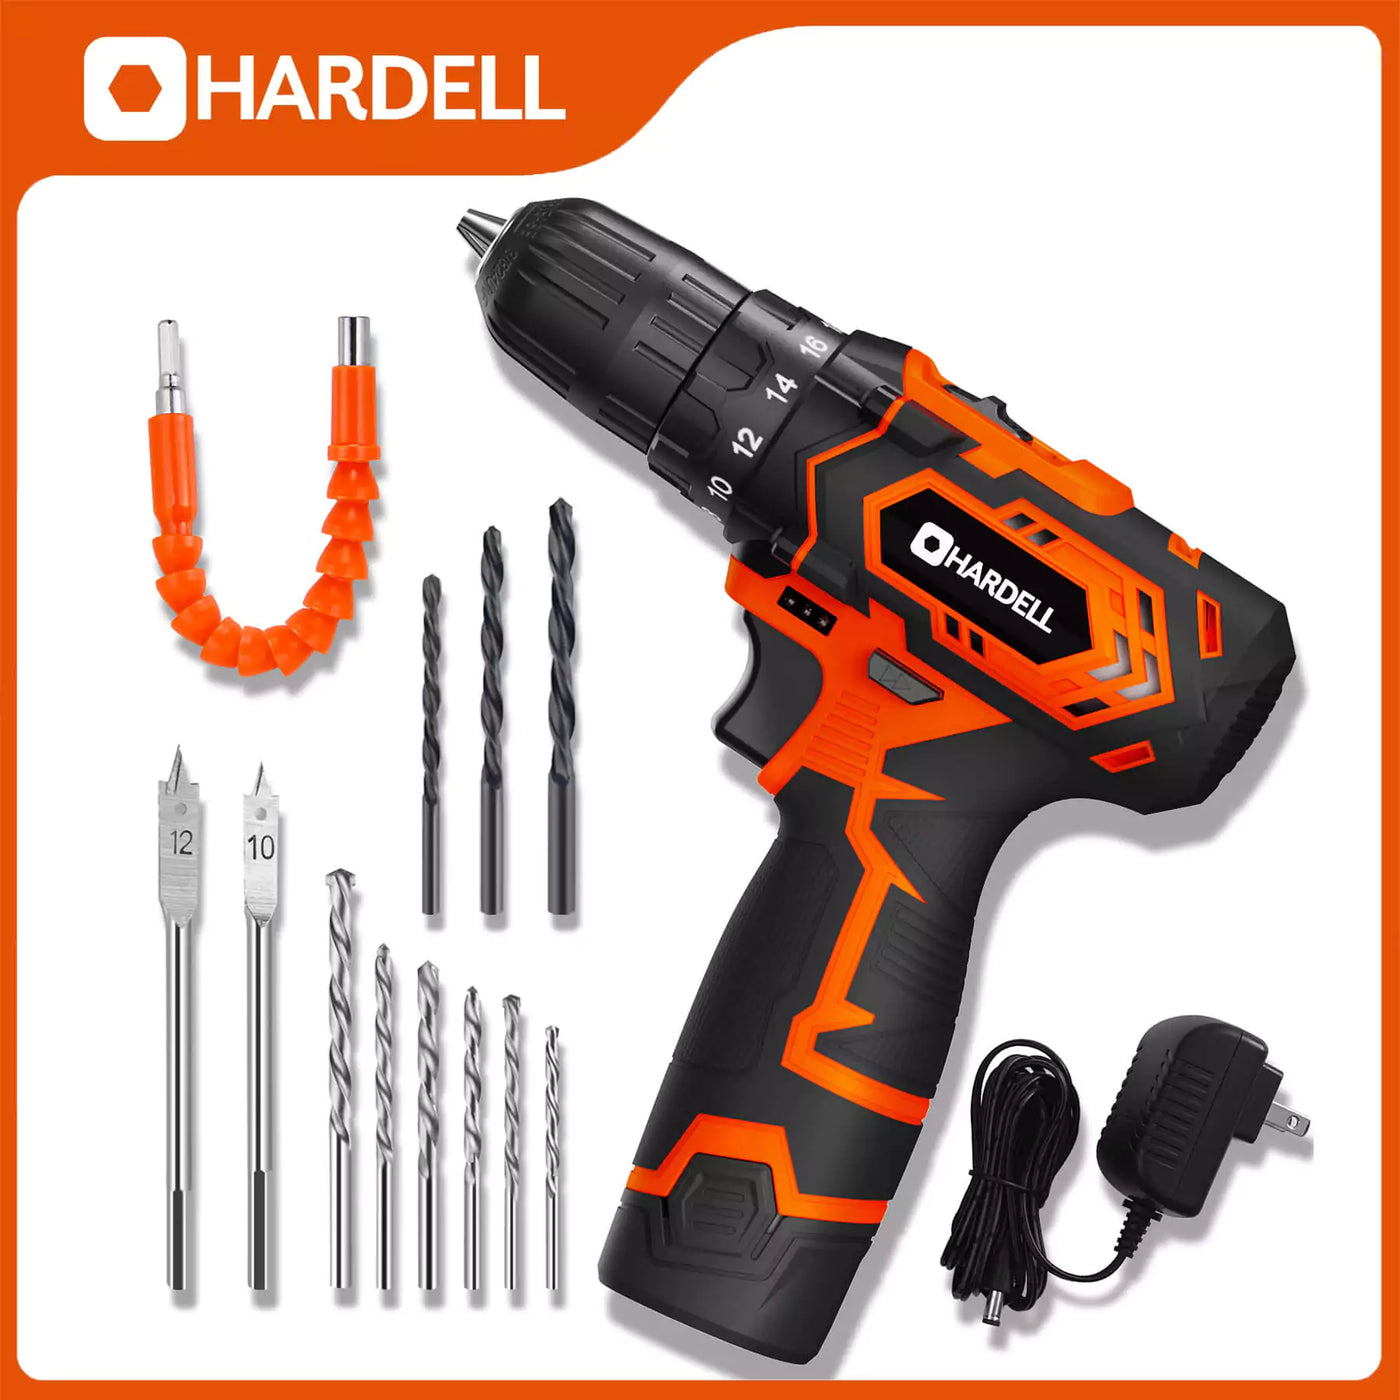 HARDELL HDCD0101 2-Speed Power Drill Set 12v - Hardell